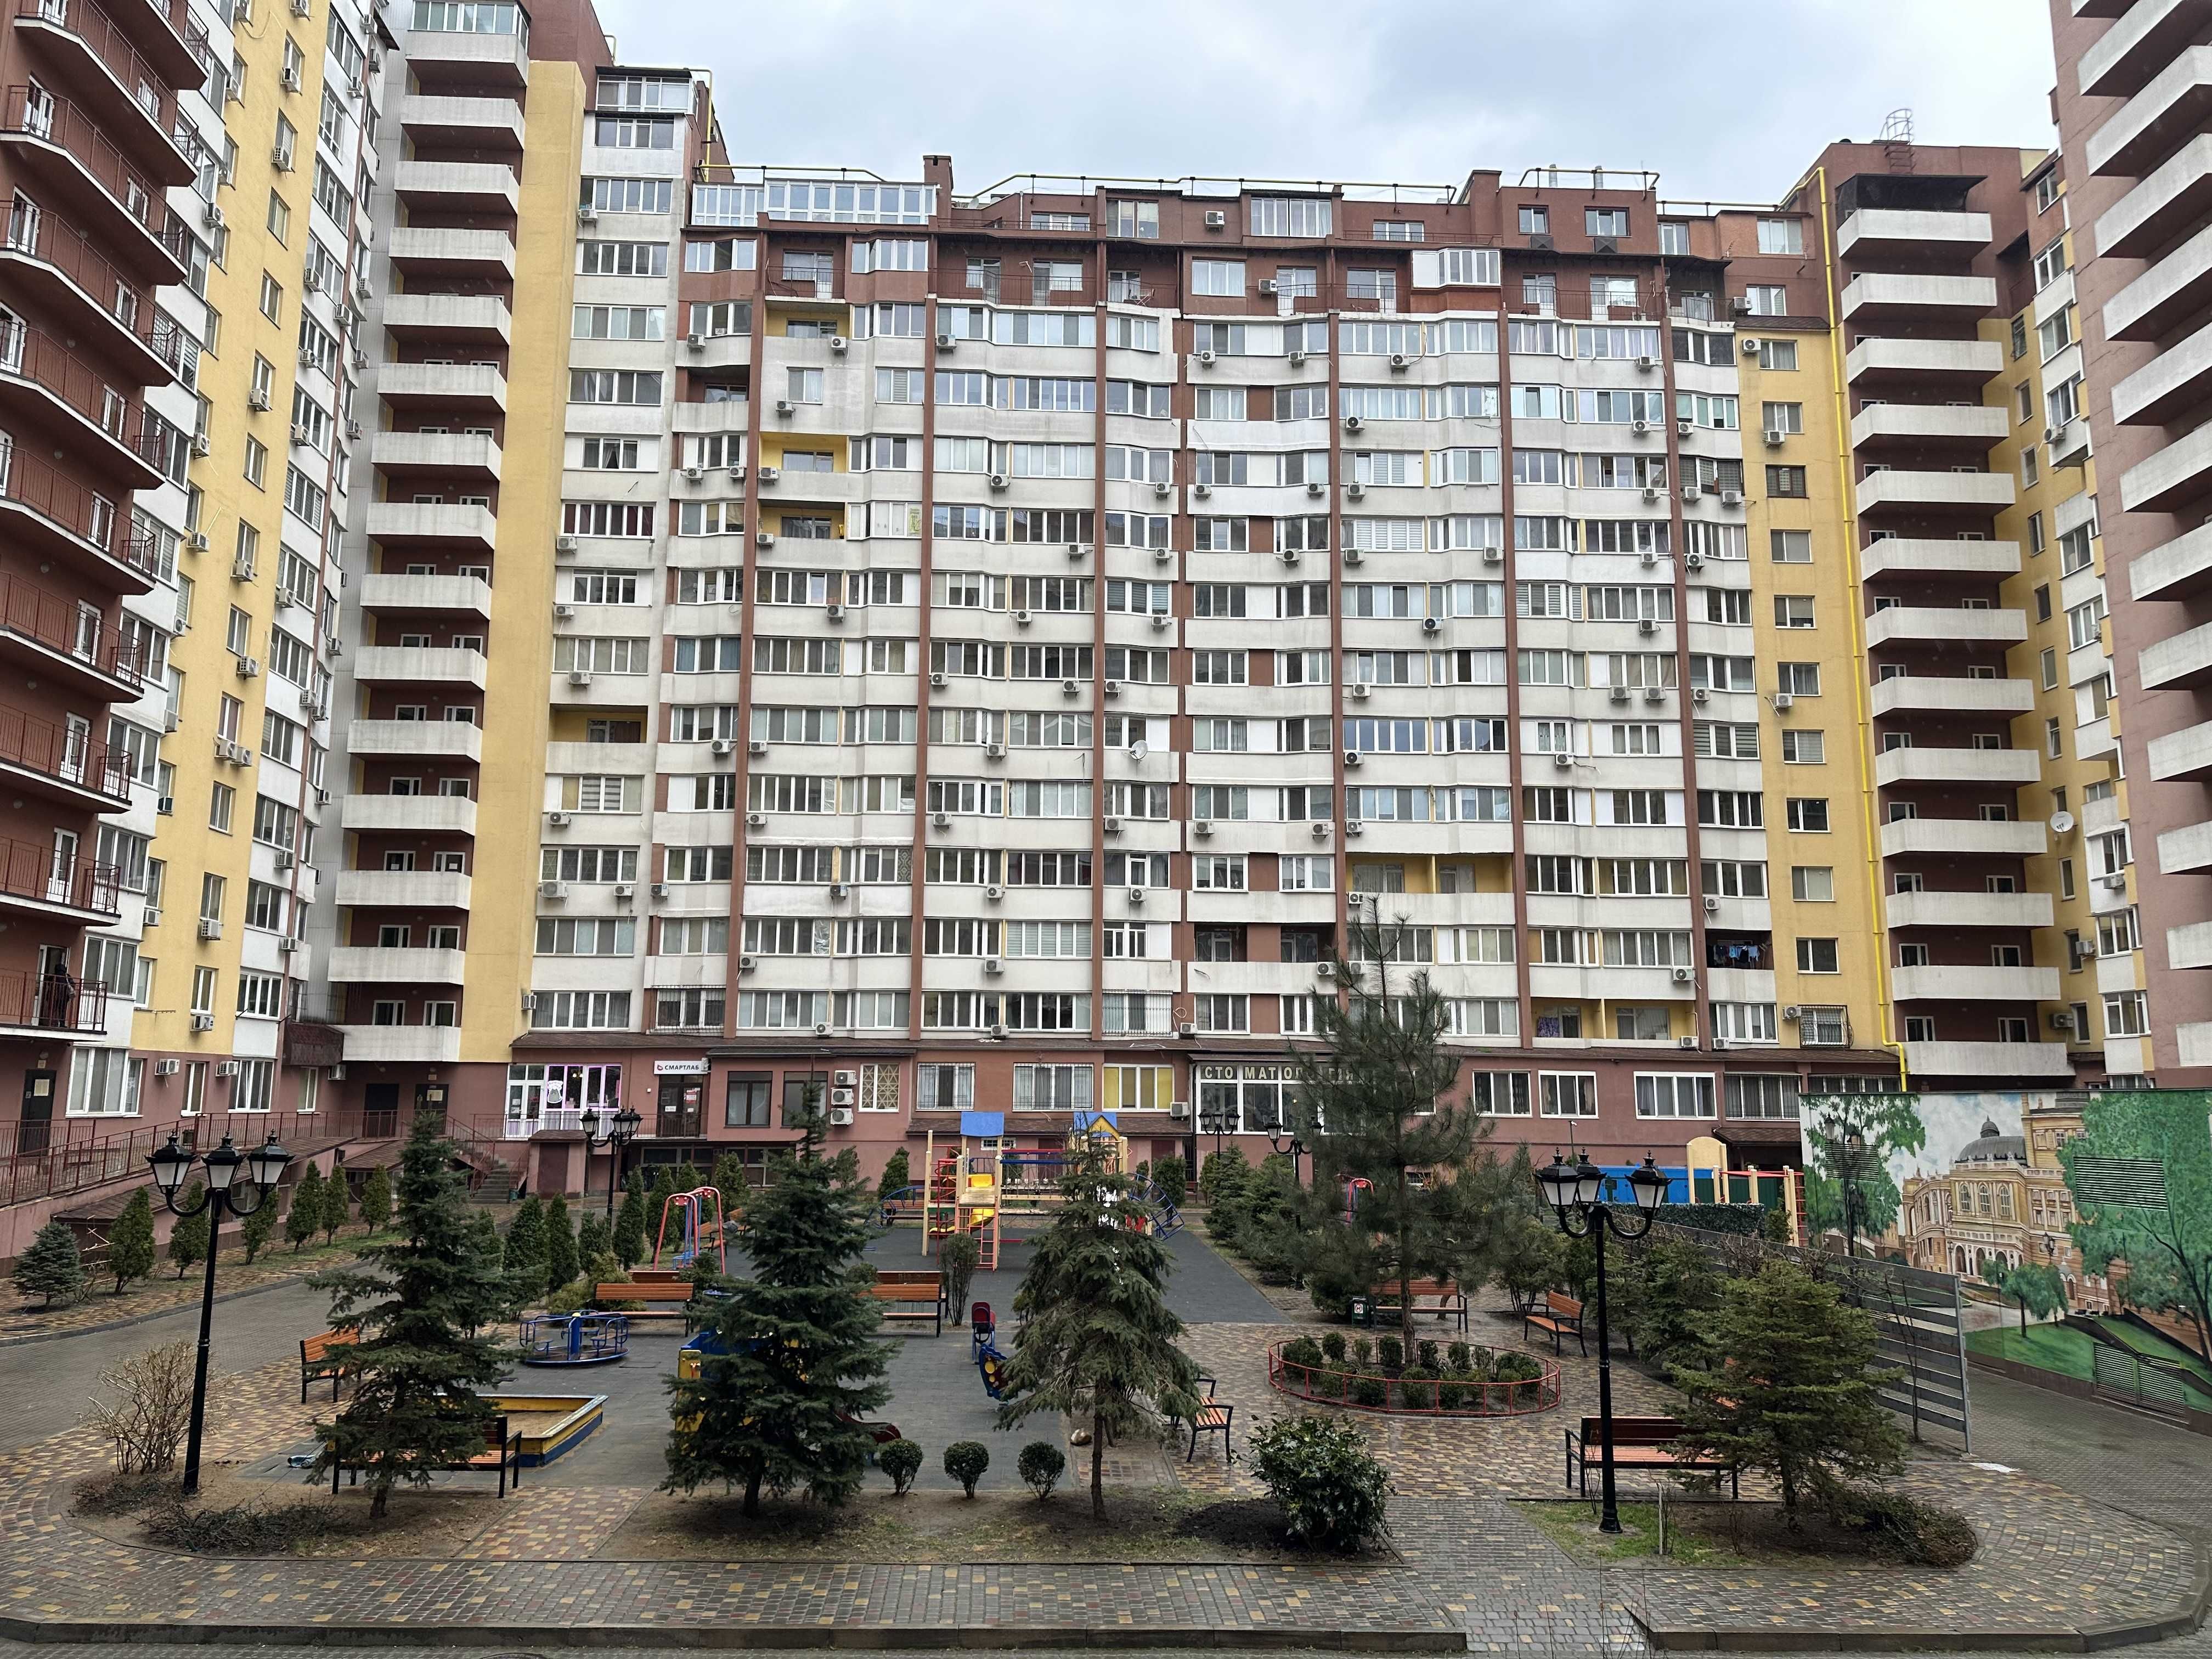 Продам 1-комн. квартиру в ЖК Левитана, Таирова, качественный ремонт.